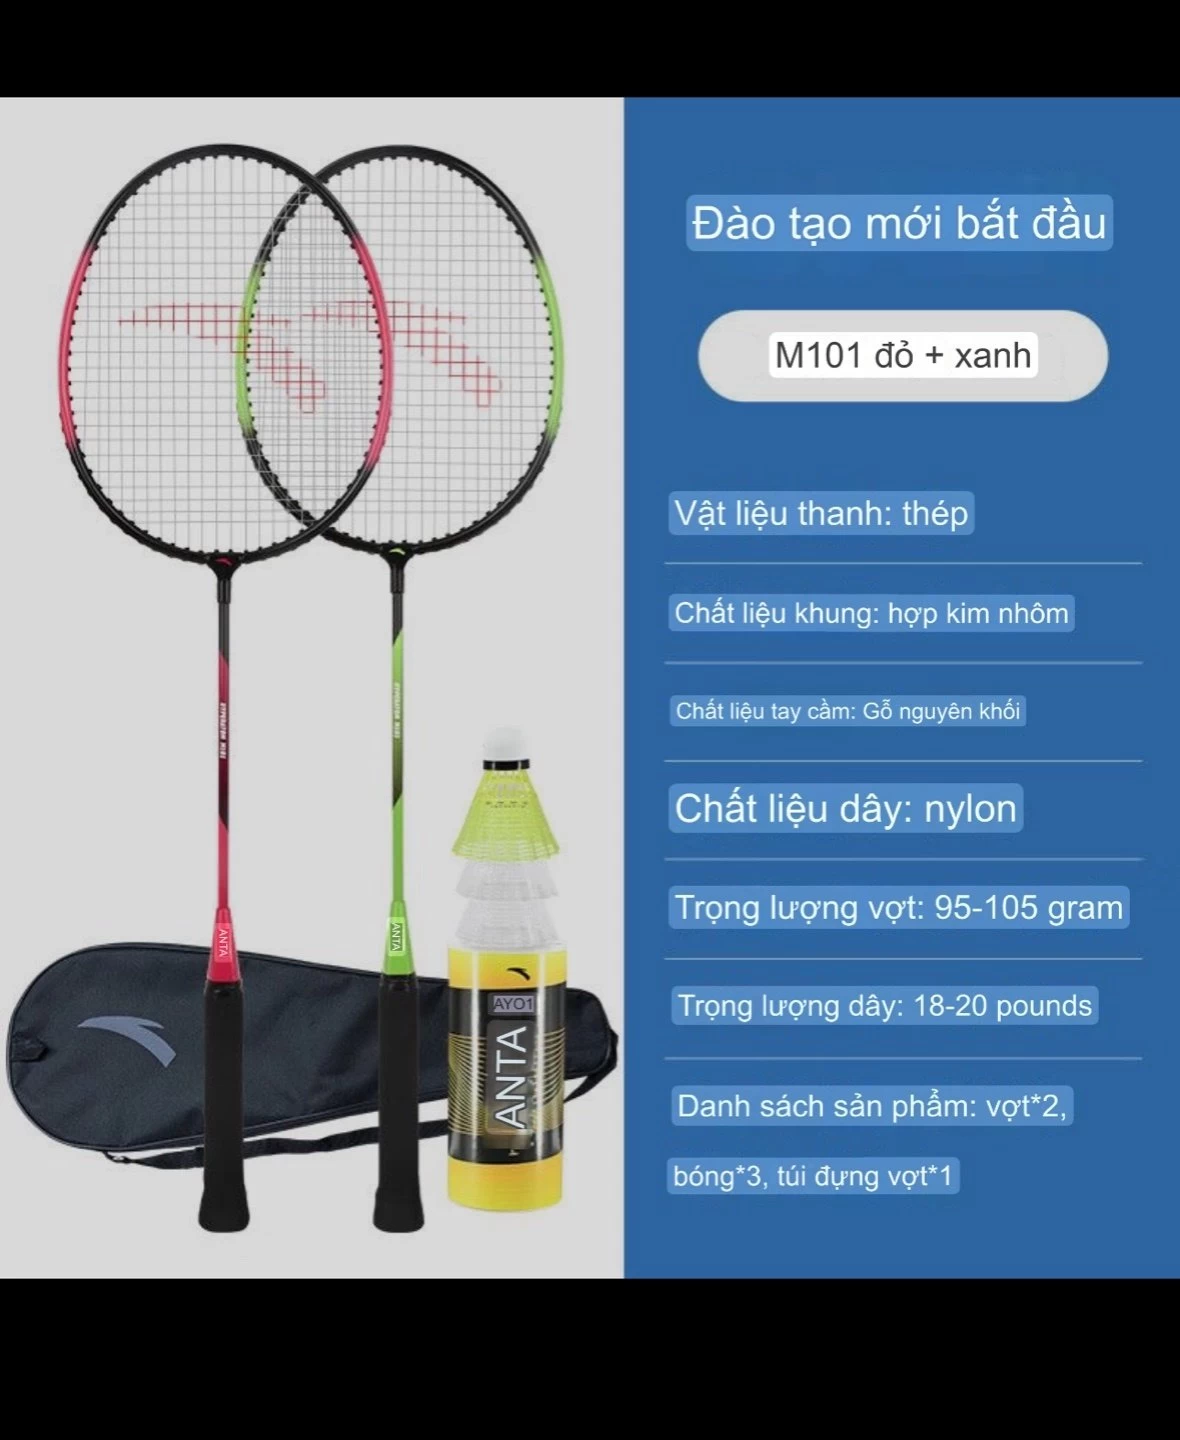 Bộ vợt cầu lông Anta siêu nhẹ Sỉ 205